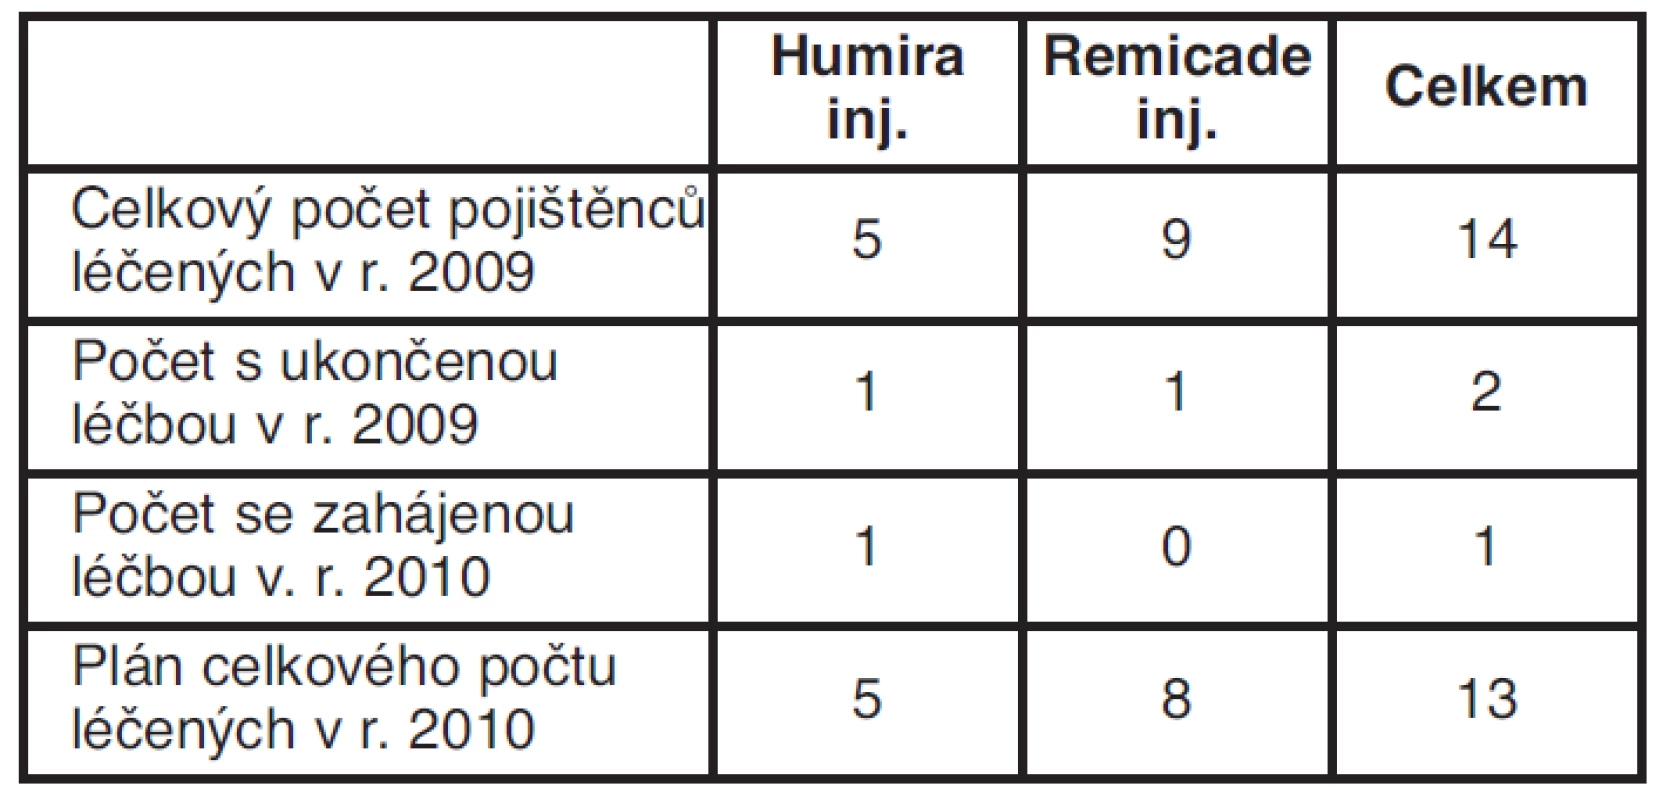 Počet léčených LP Humira a Remicade inj. v r. 2009 a plán
pro r. 2010